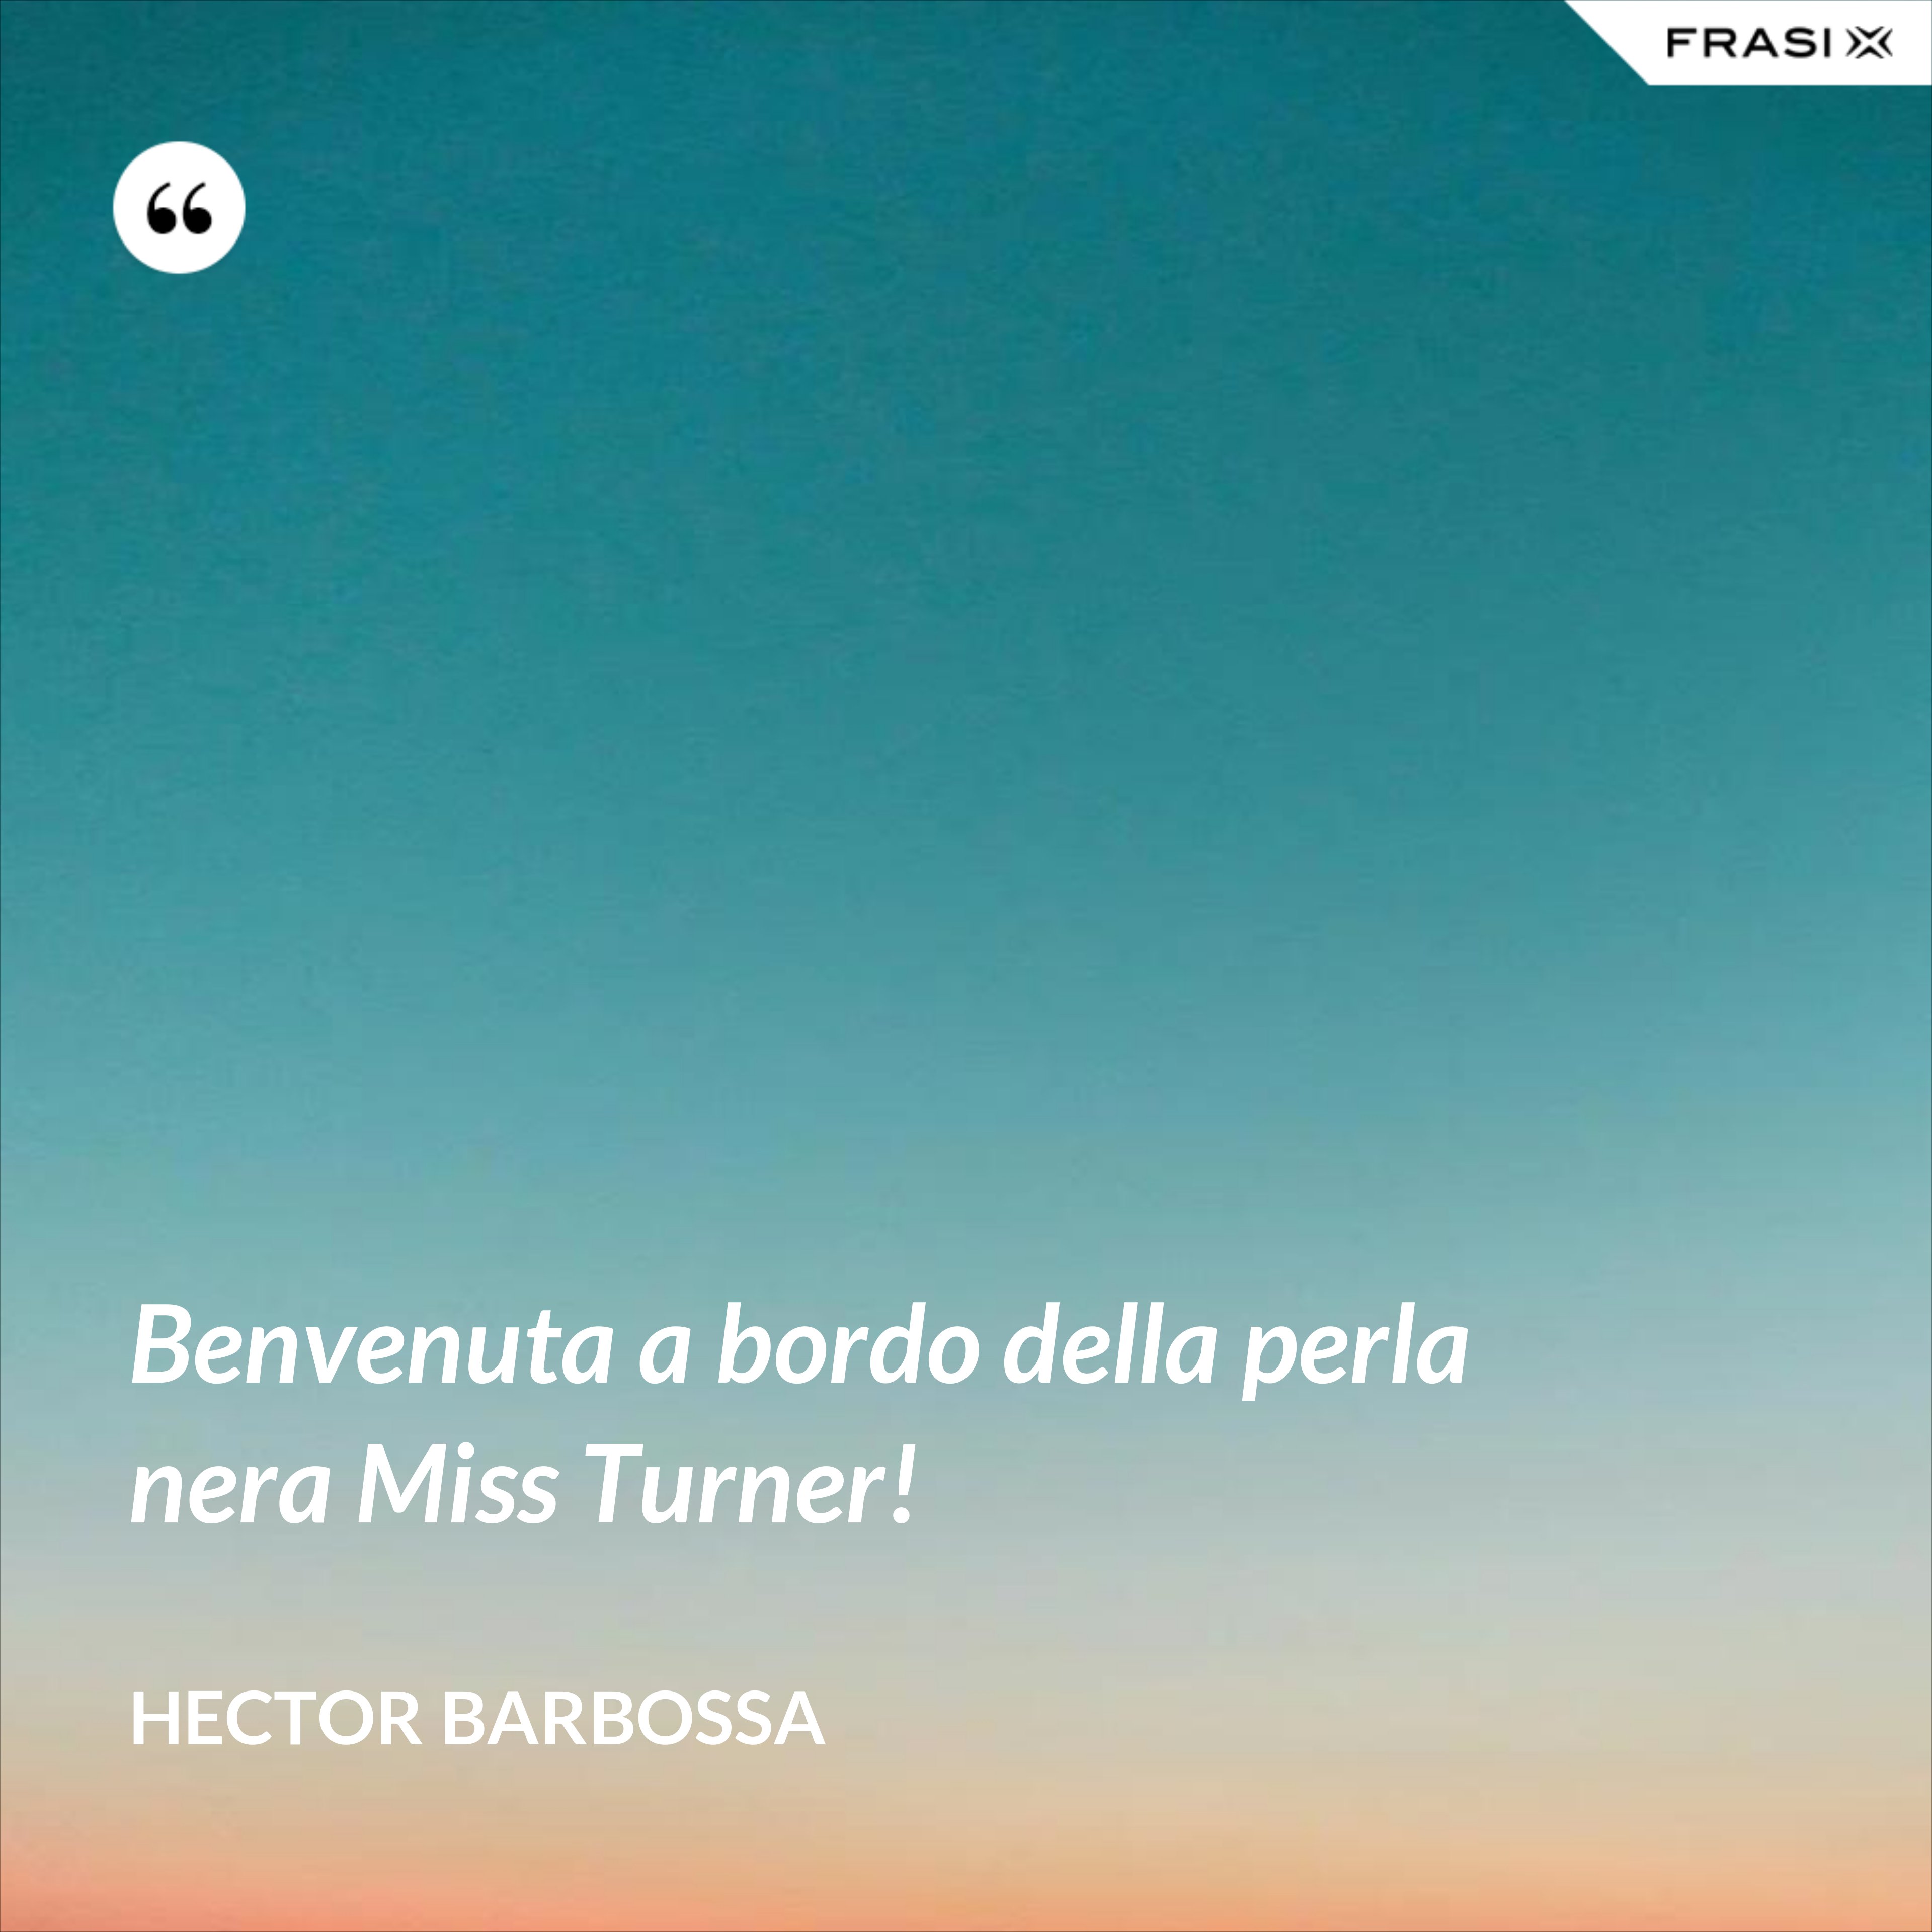 Benvenuta a bordo della perla nera Miss Turner! - Hector Barbossa